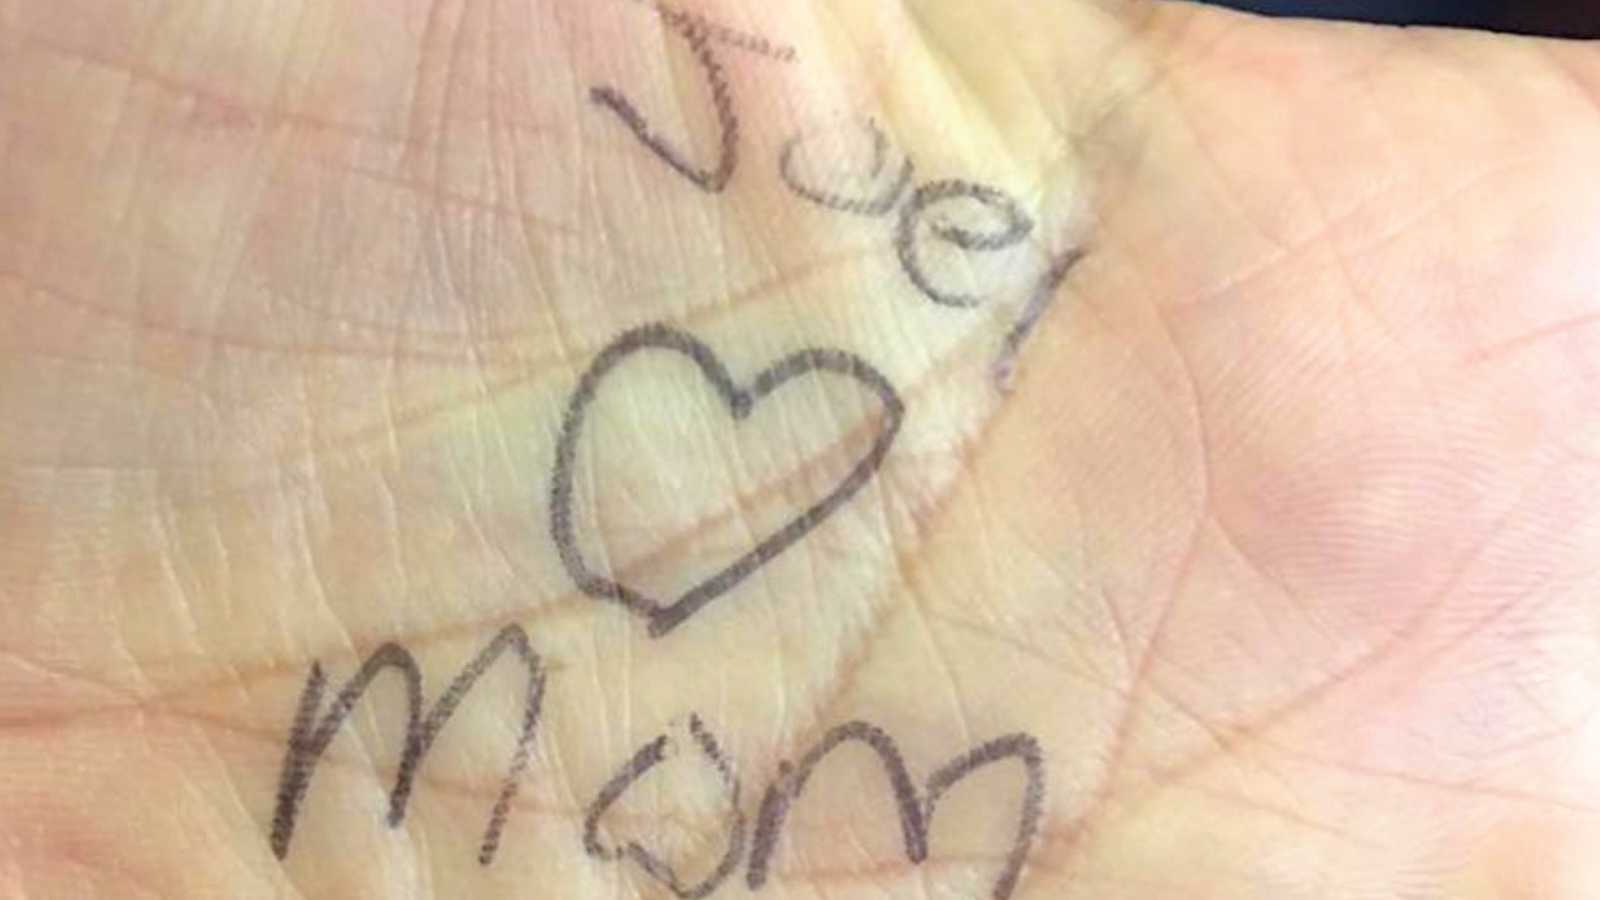 hand with "joel loves mom" writen on palm in pen